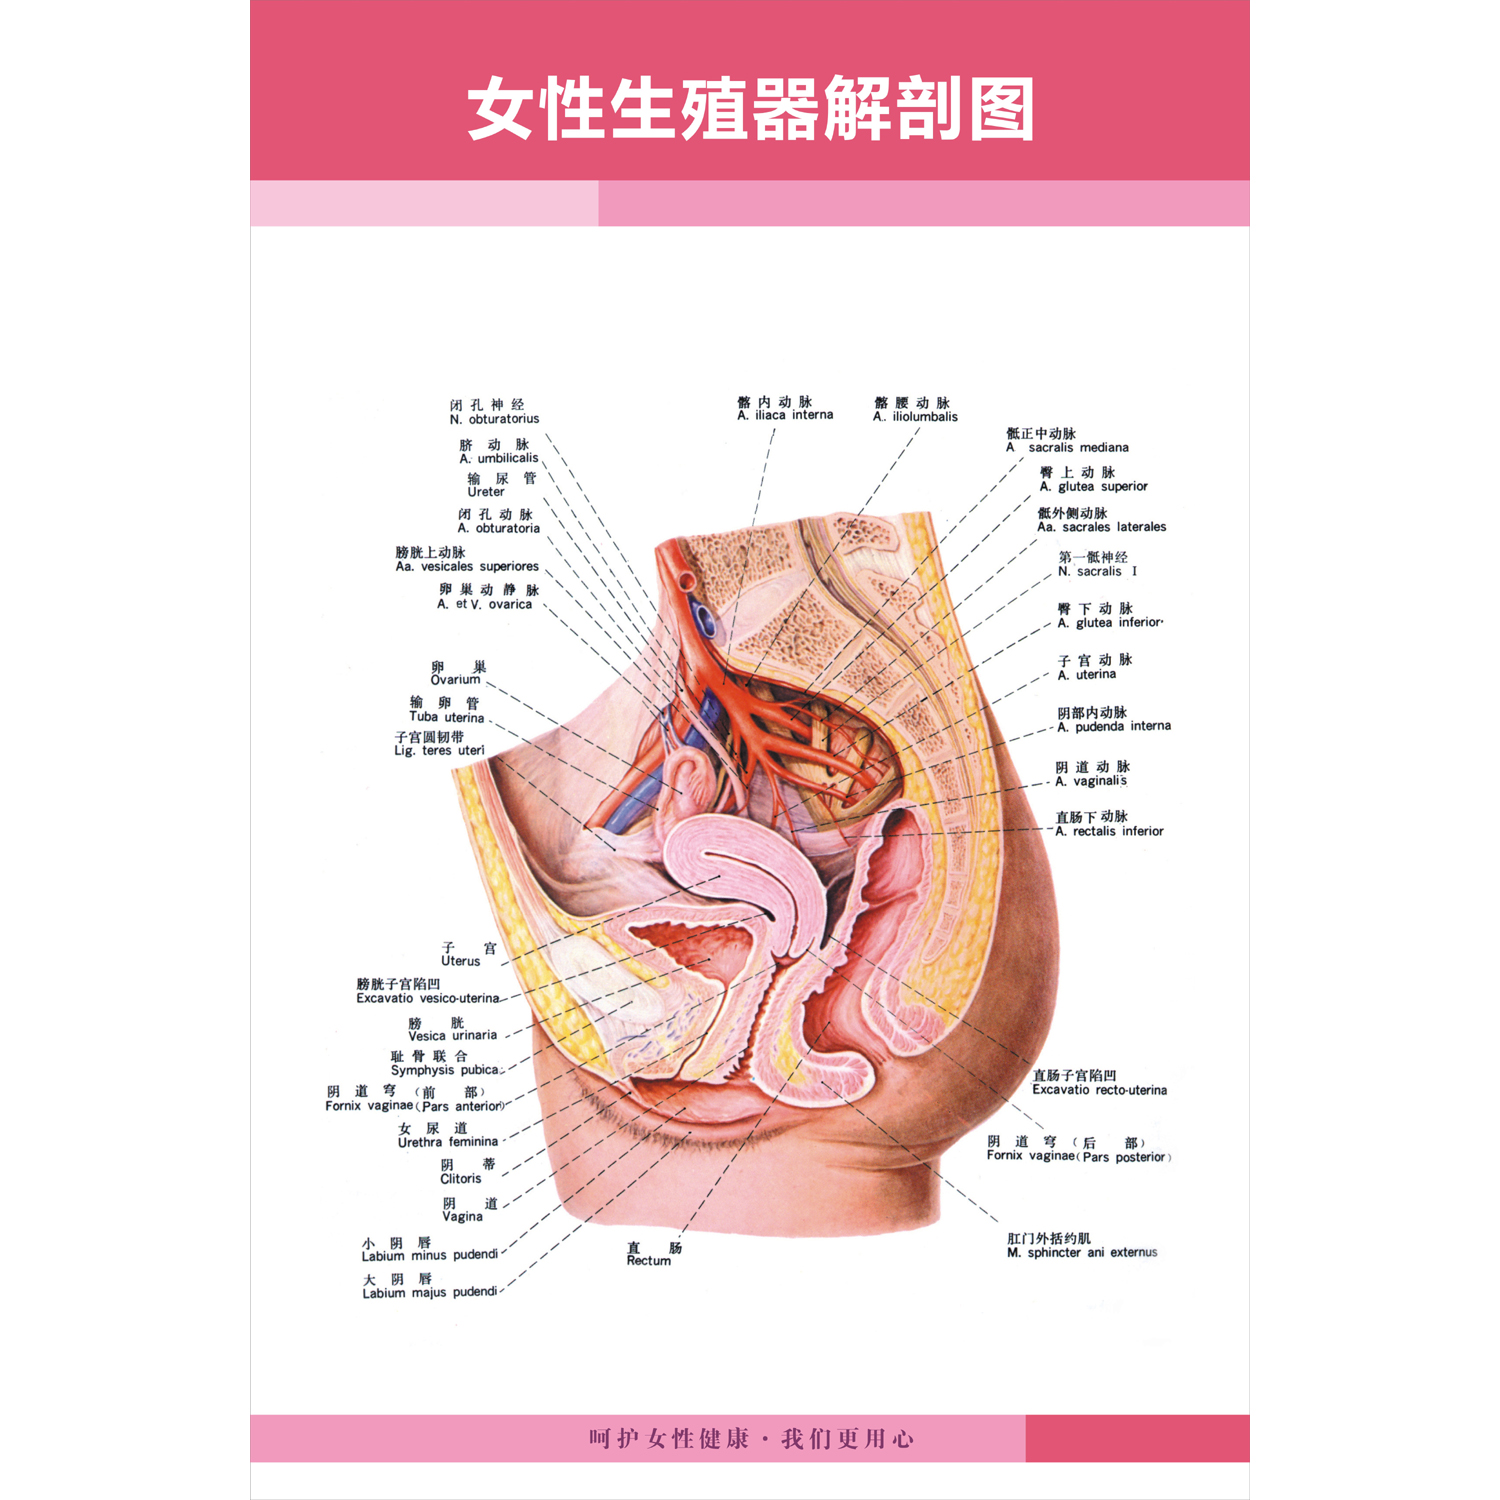 女性乳房子宫乳房生殖系统示意图医学宣传挂图人体器官解剖图医院